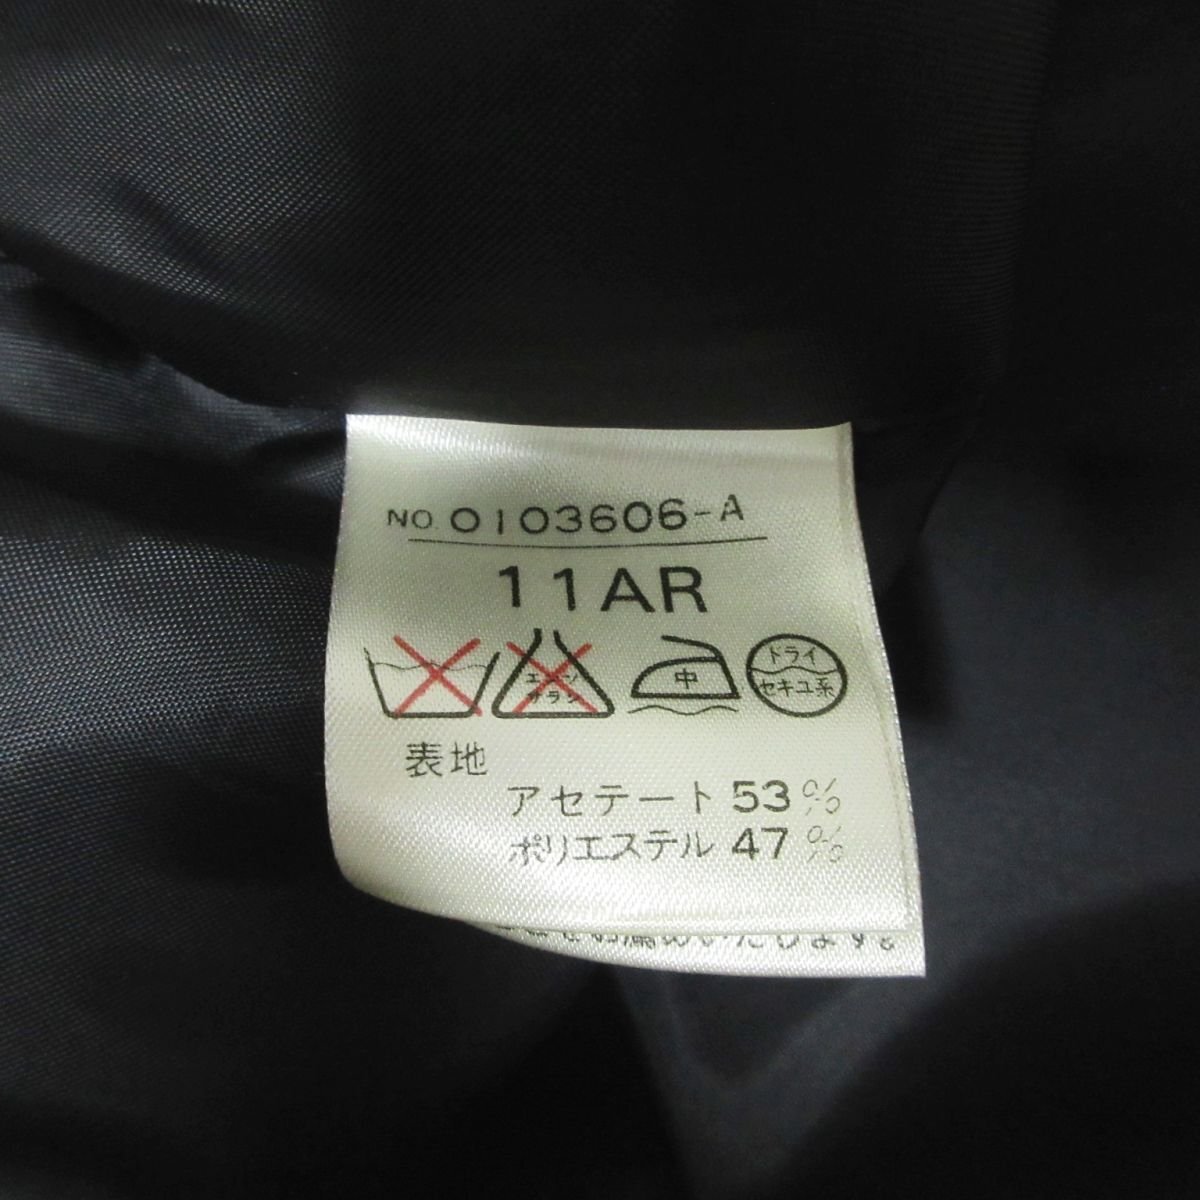  прекрасный товар SOIR PERLEsowa-rupe Lulu Tokyo sowa-ru жакет × короткий рукав One-piece костюм выставить формальный 11AR черный *